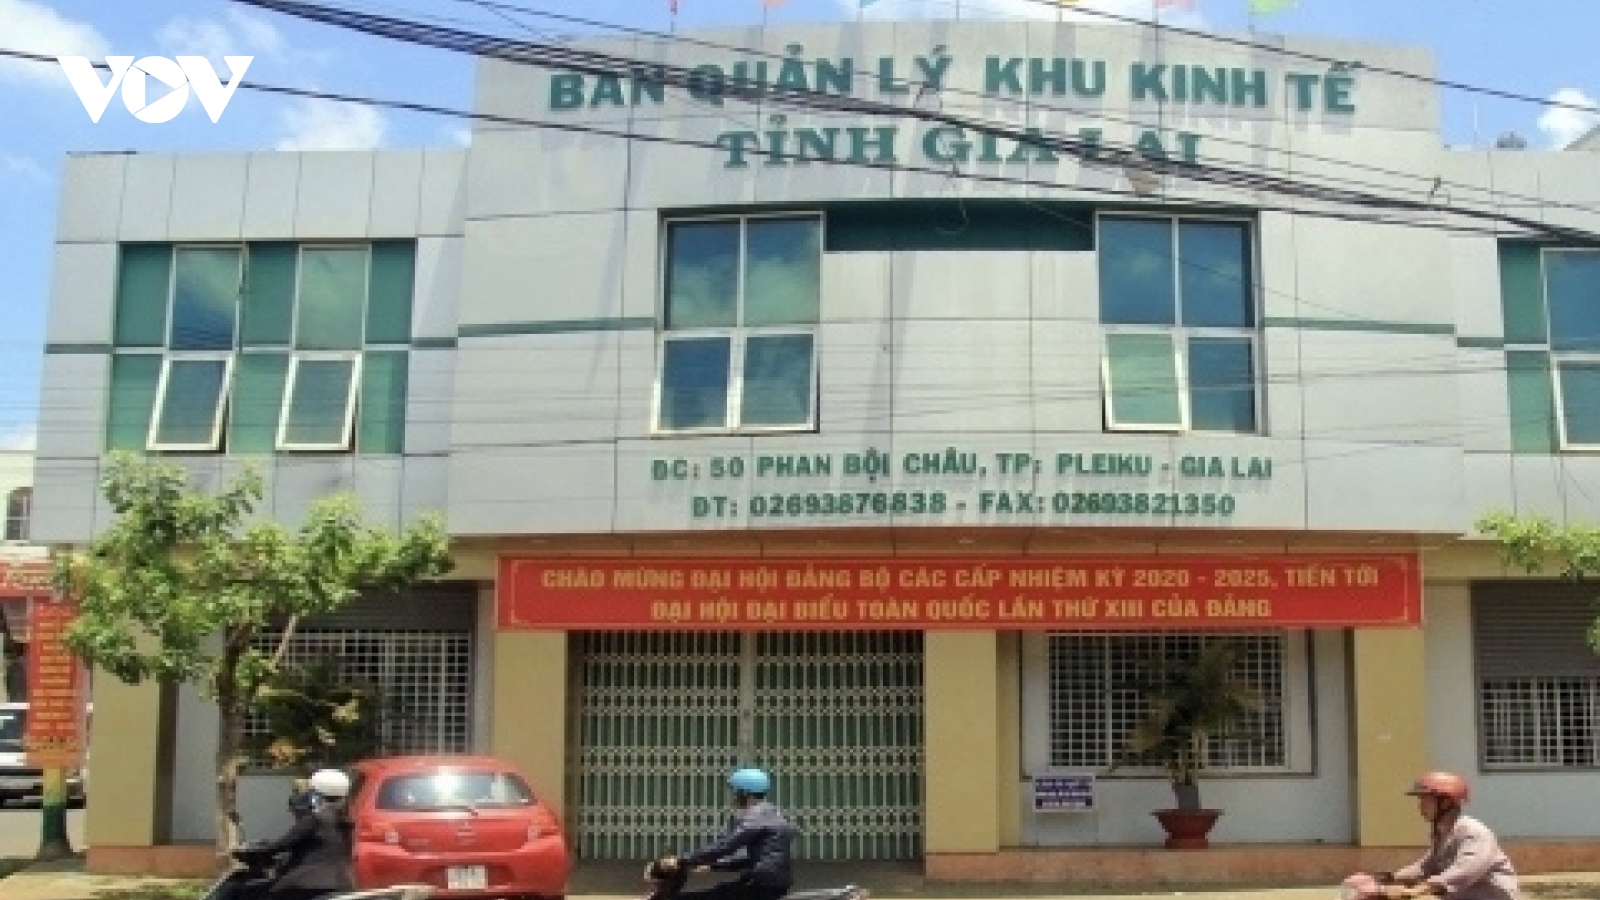 Phát hiện nhiều sai phạm tại Ban quản lý Khu kinh tế tỉnh Gia Lai